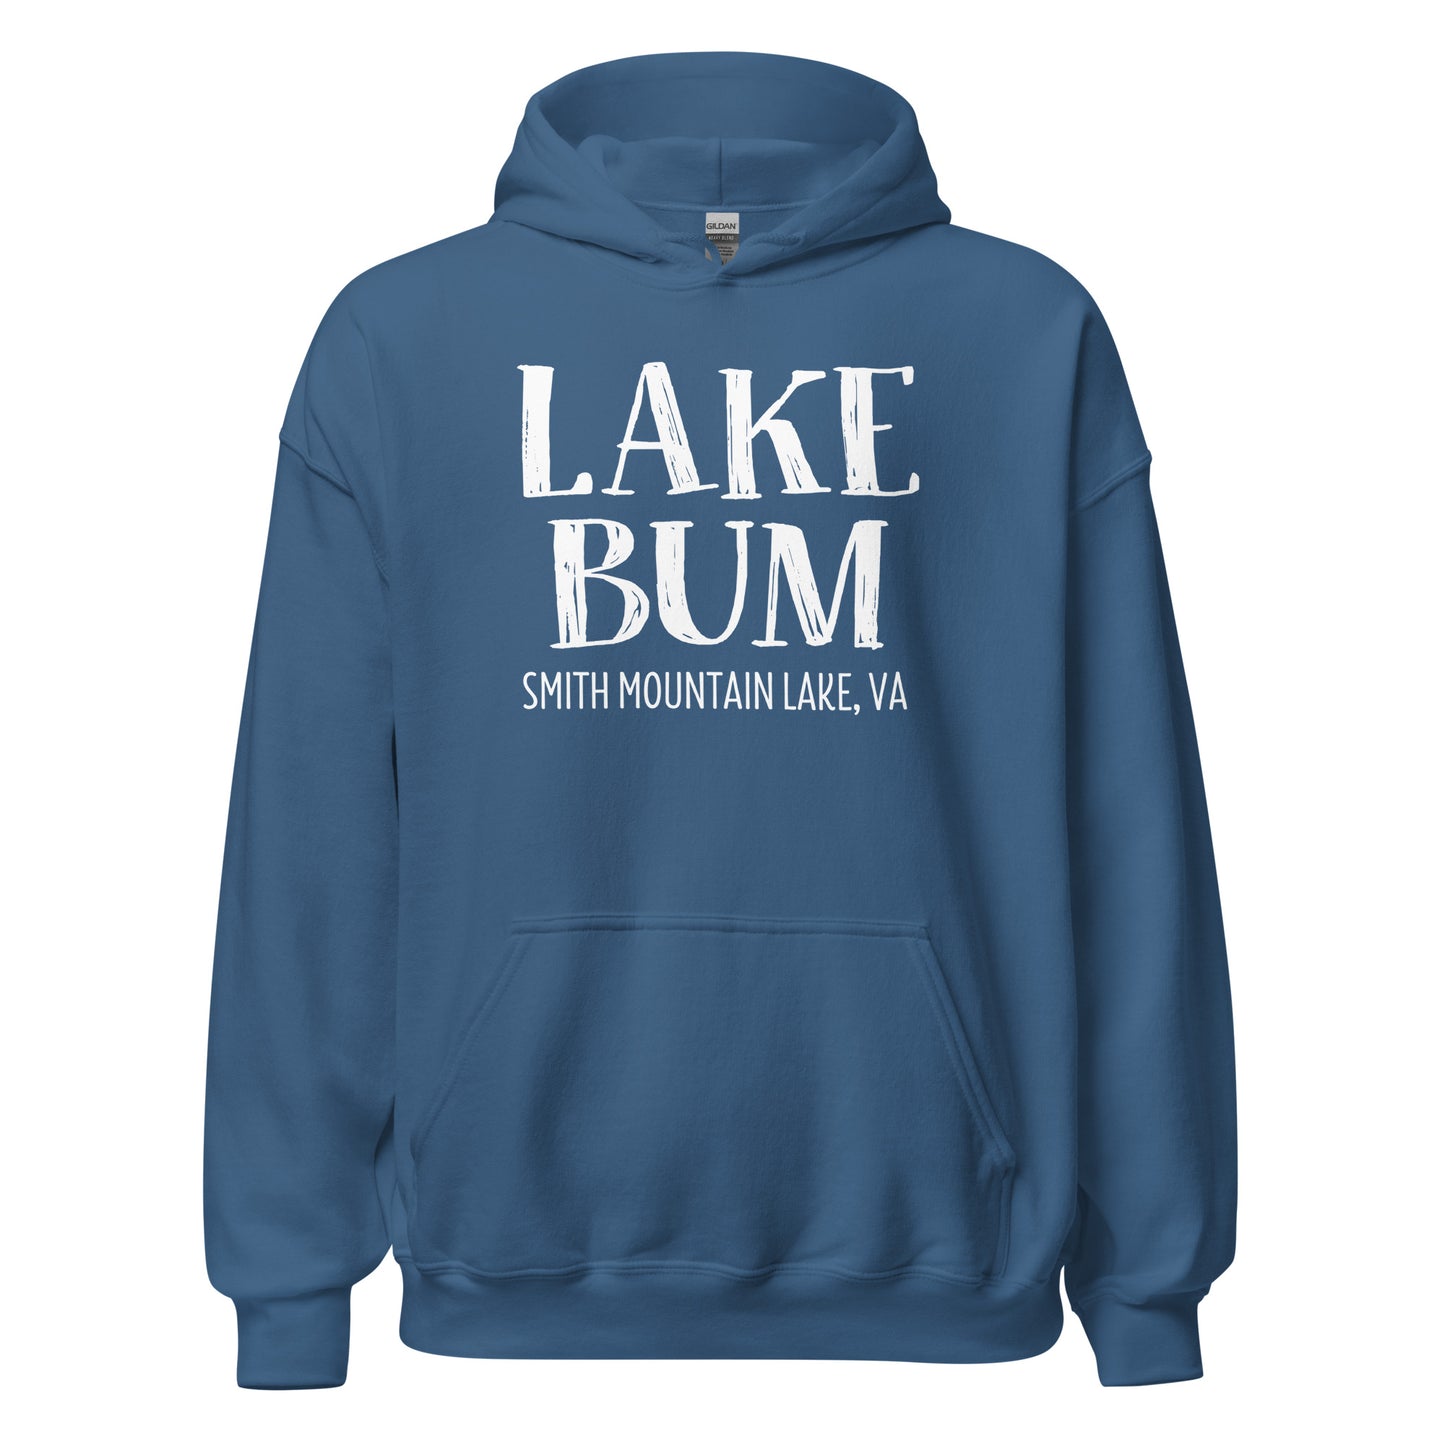 Smith Mountain Lake Bum Unisex Hoodie Sweatshirt